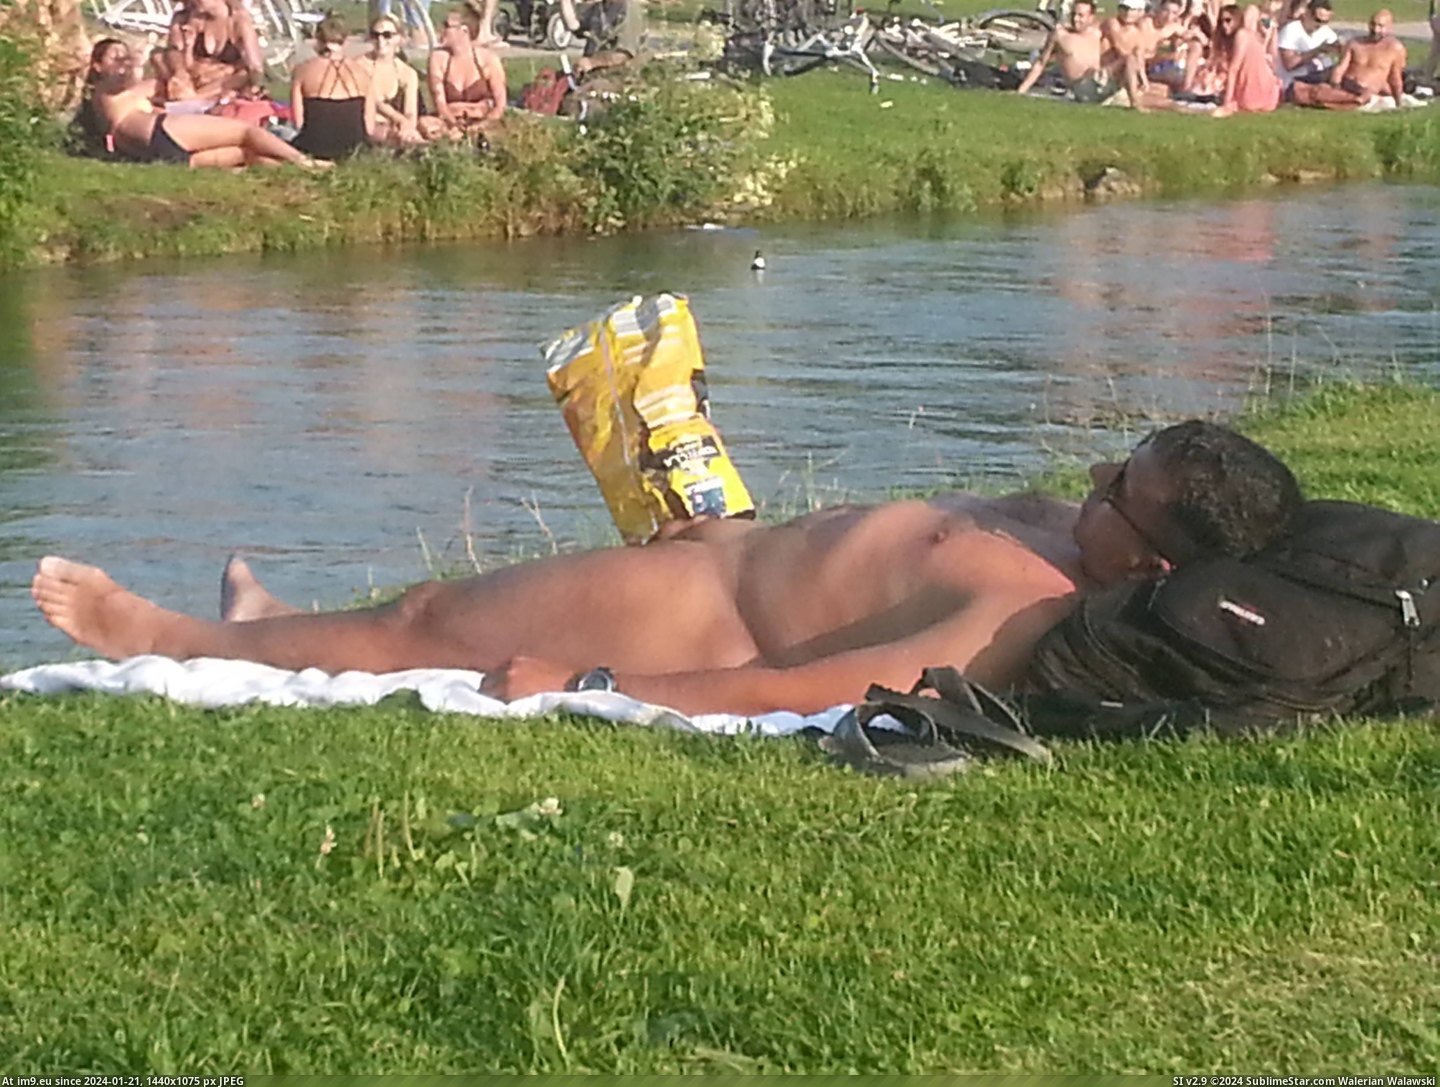 #Wtf #Naked #Man #Crisp #Erection #Sleeping #Bag #Puts [Wtf] Naked sleeping man gets erection so someone puts crisp bag over it. Pic. (Изображение из альбом My r/WTF favs))